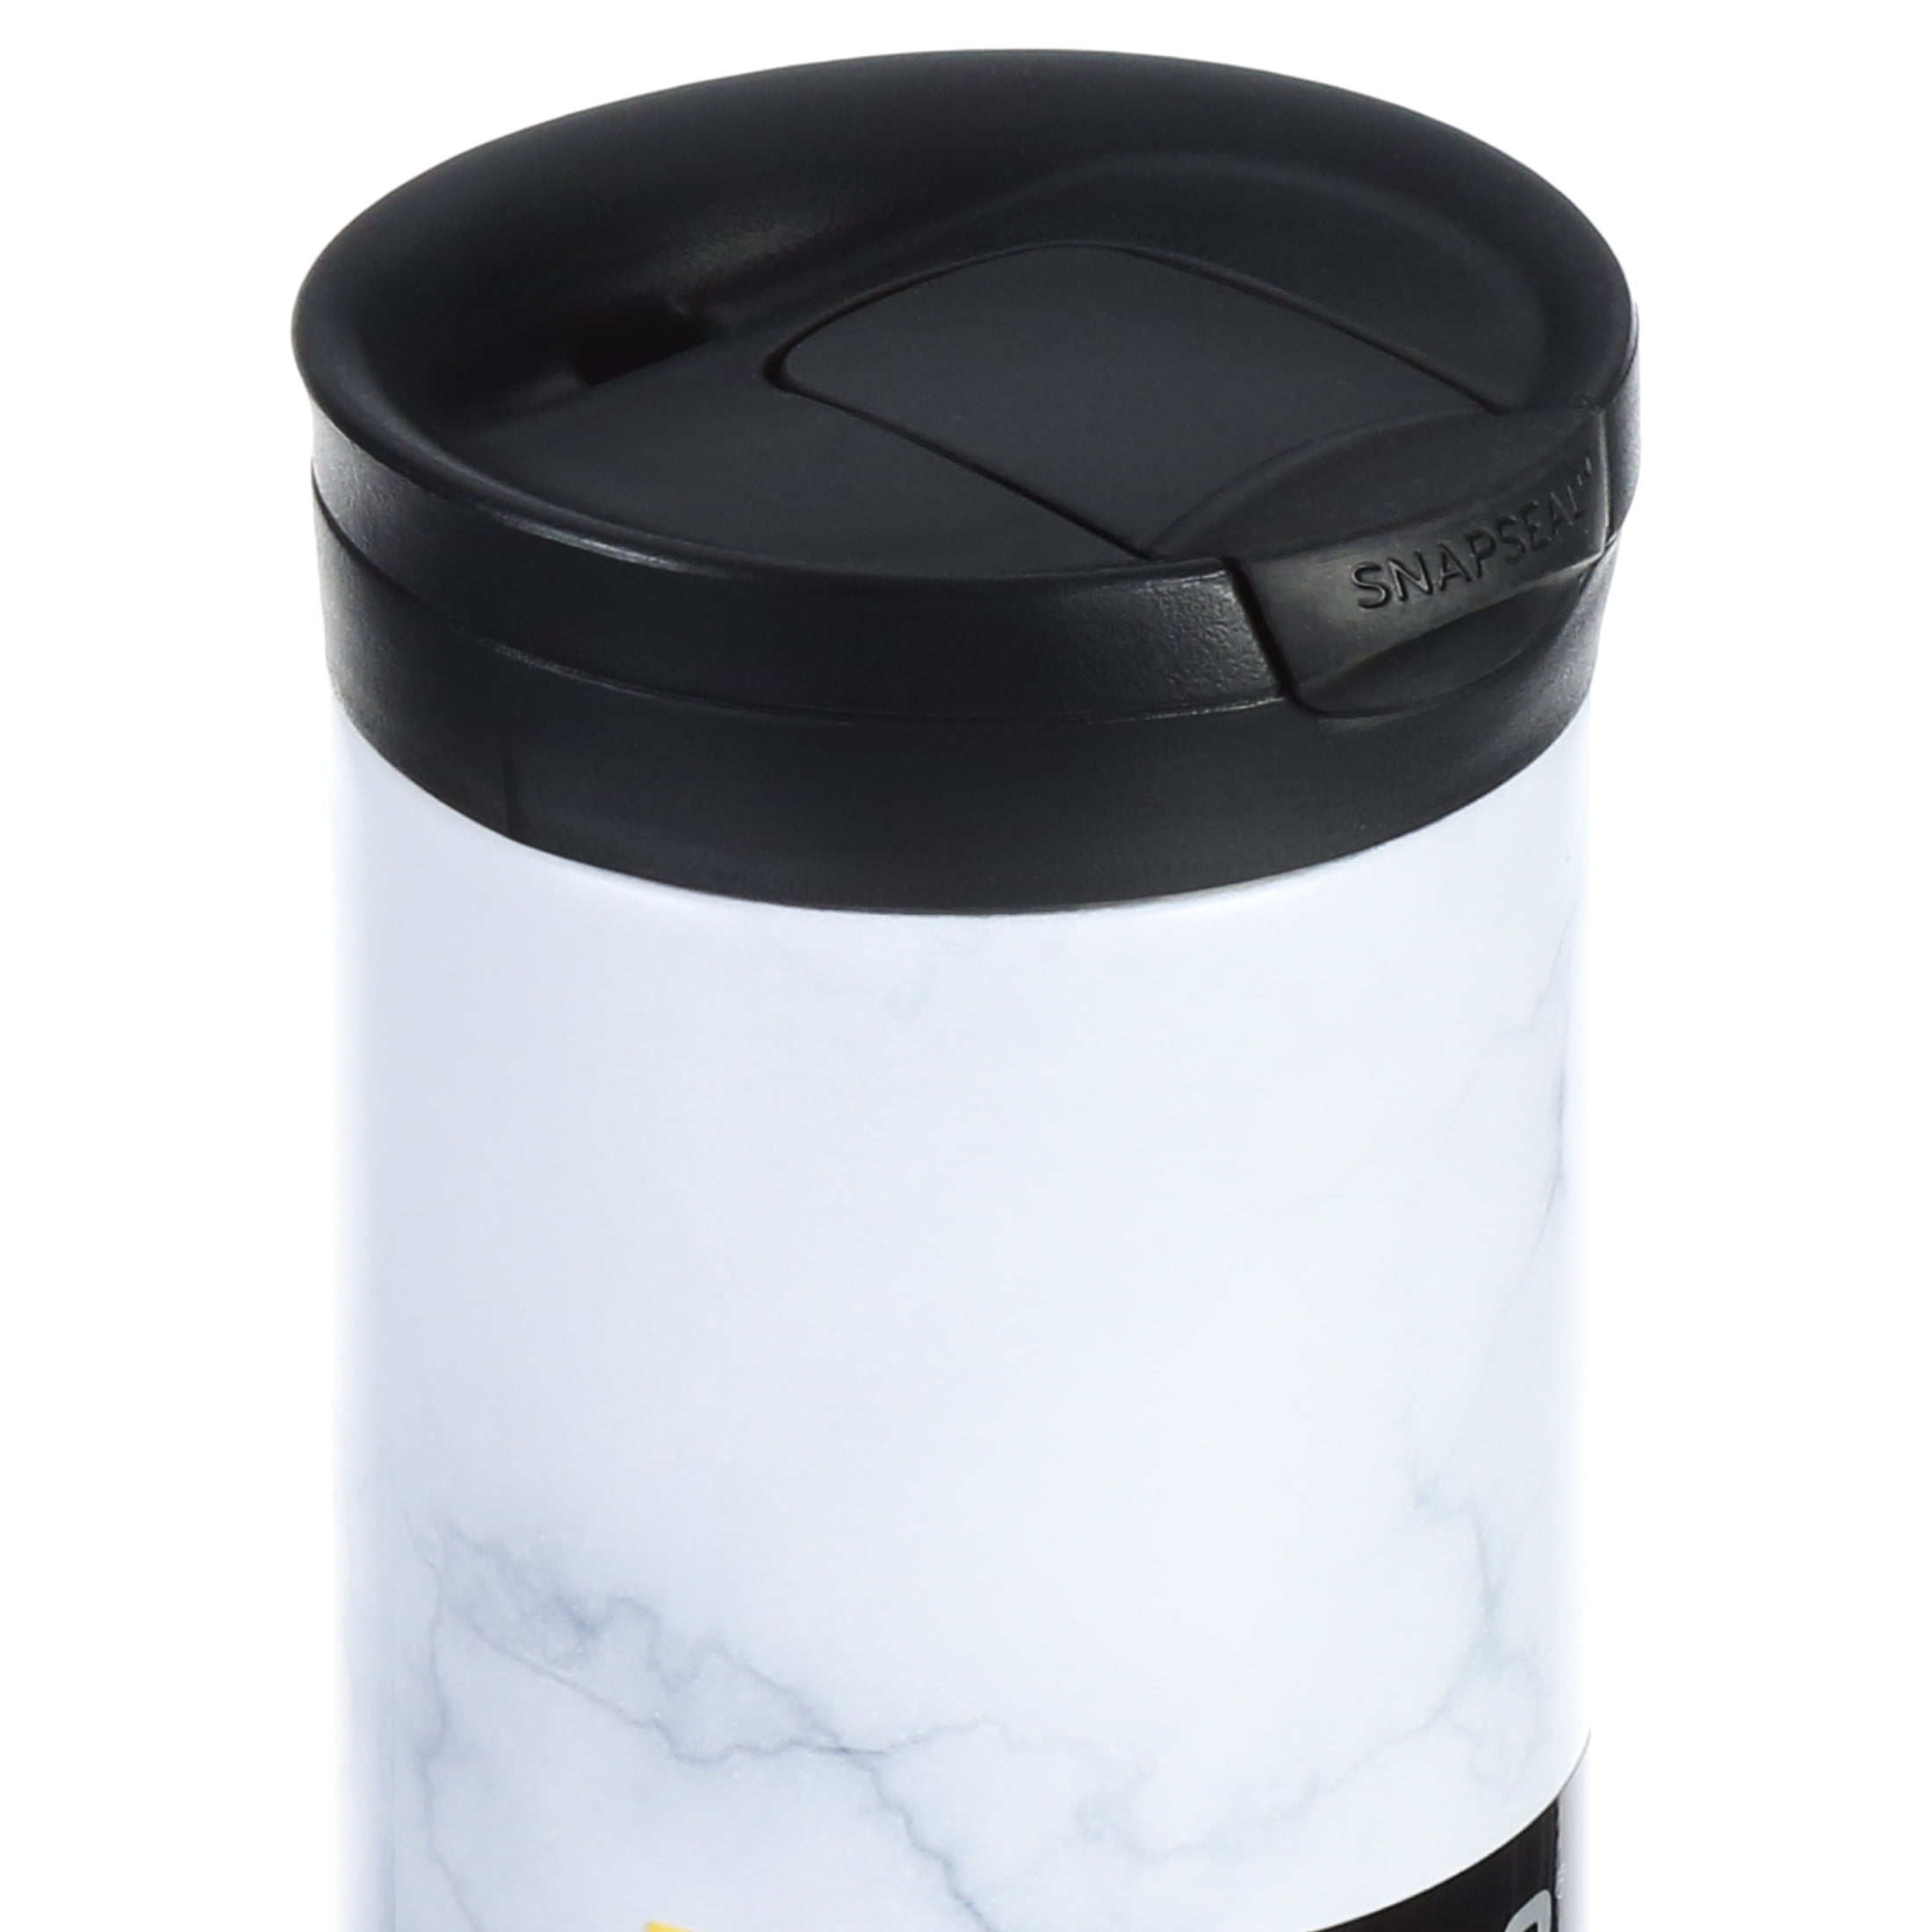 Contigo Personalized 20oz Couture Matterhorn Travel Mug/coffee Mug